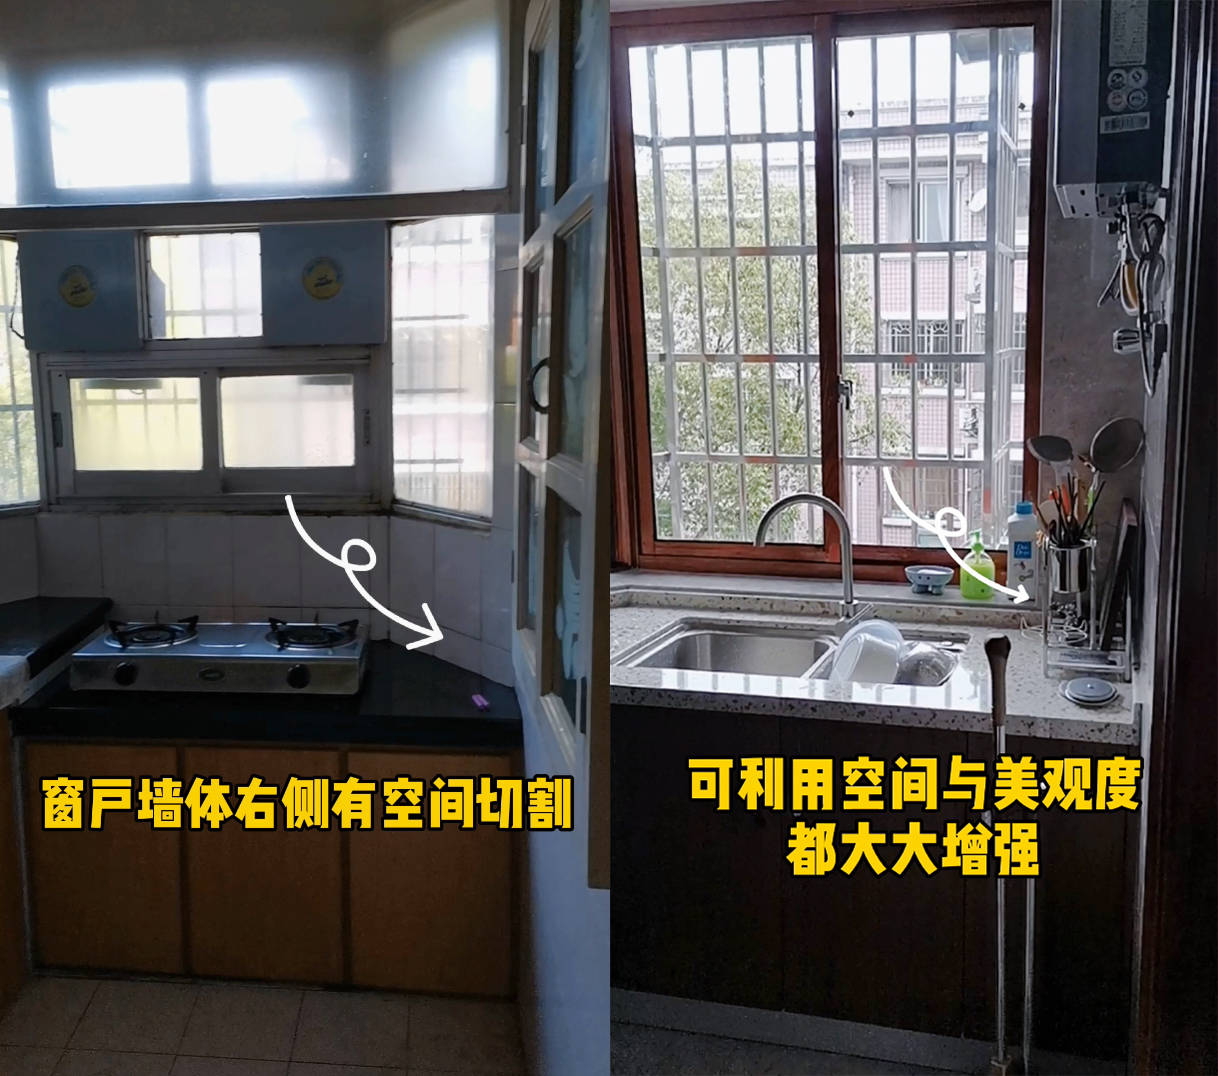 改造前的厨房,窗户可打开面积小,视野窄,通风差,采光不足.